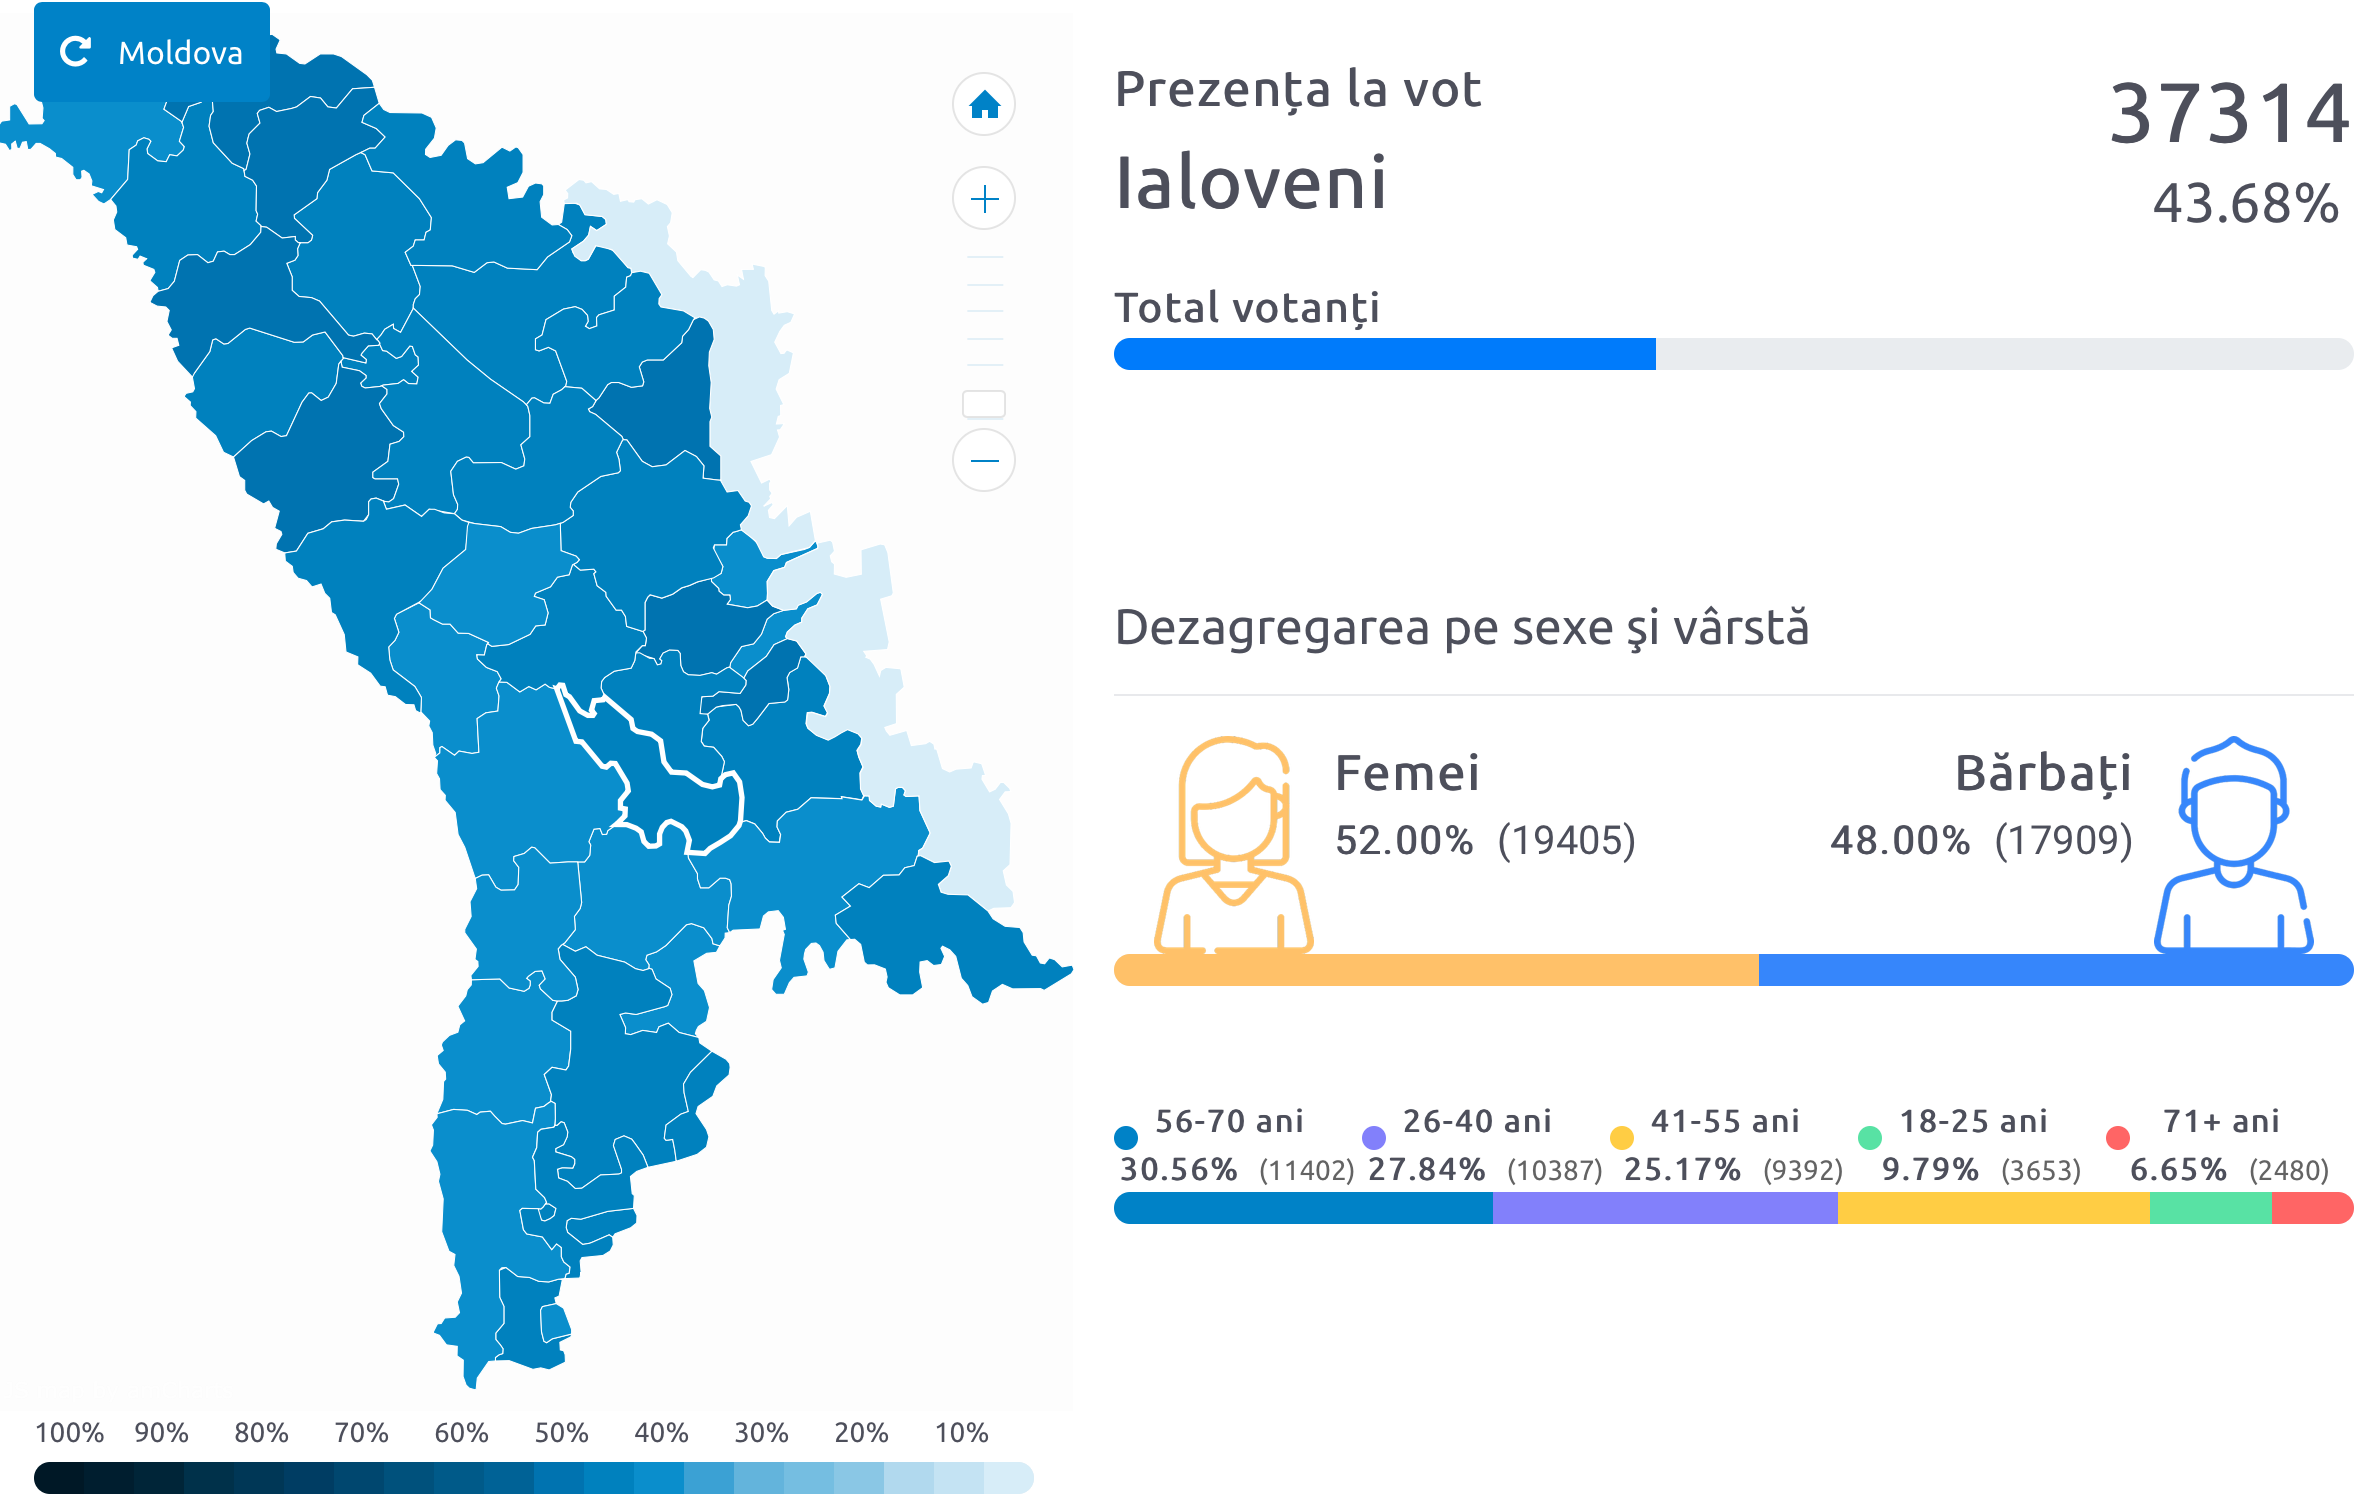 prezenta vot 2020 ialoveni